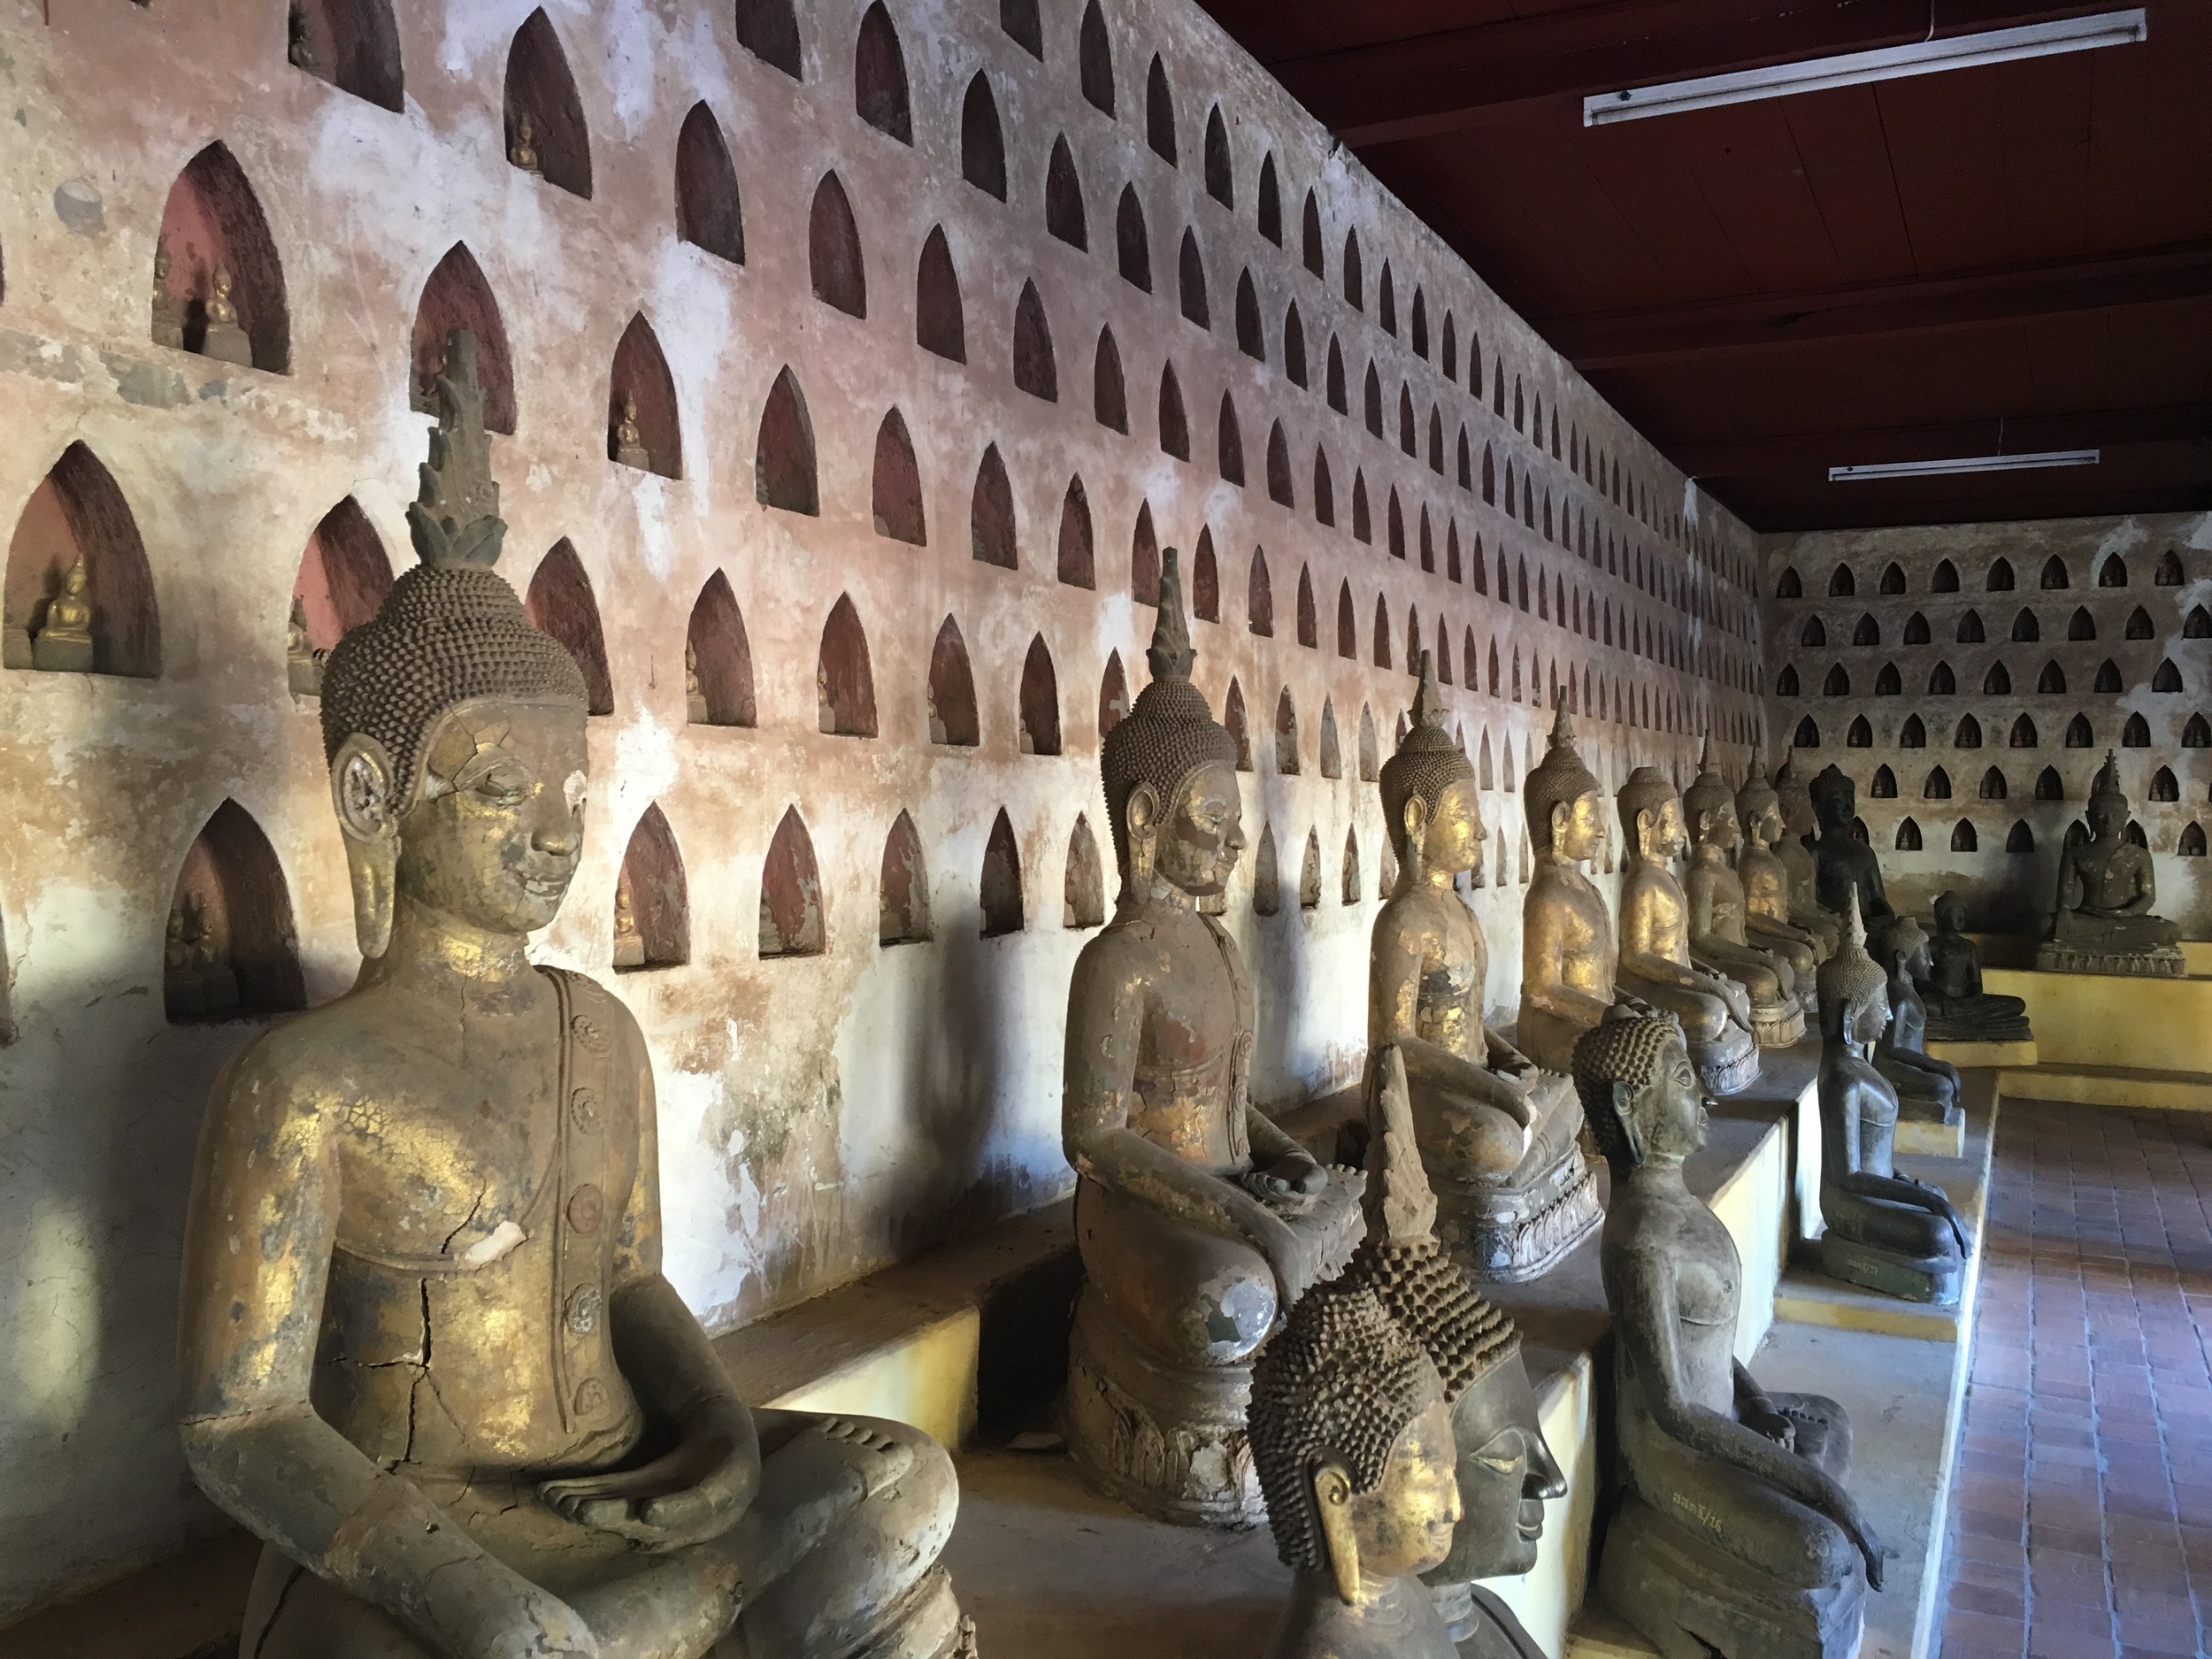 2000 buddhas at Wat Si Saket